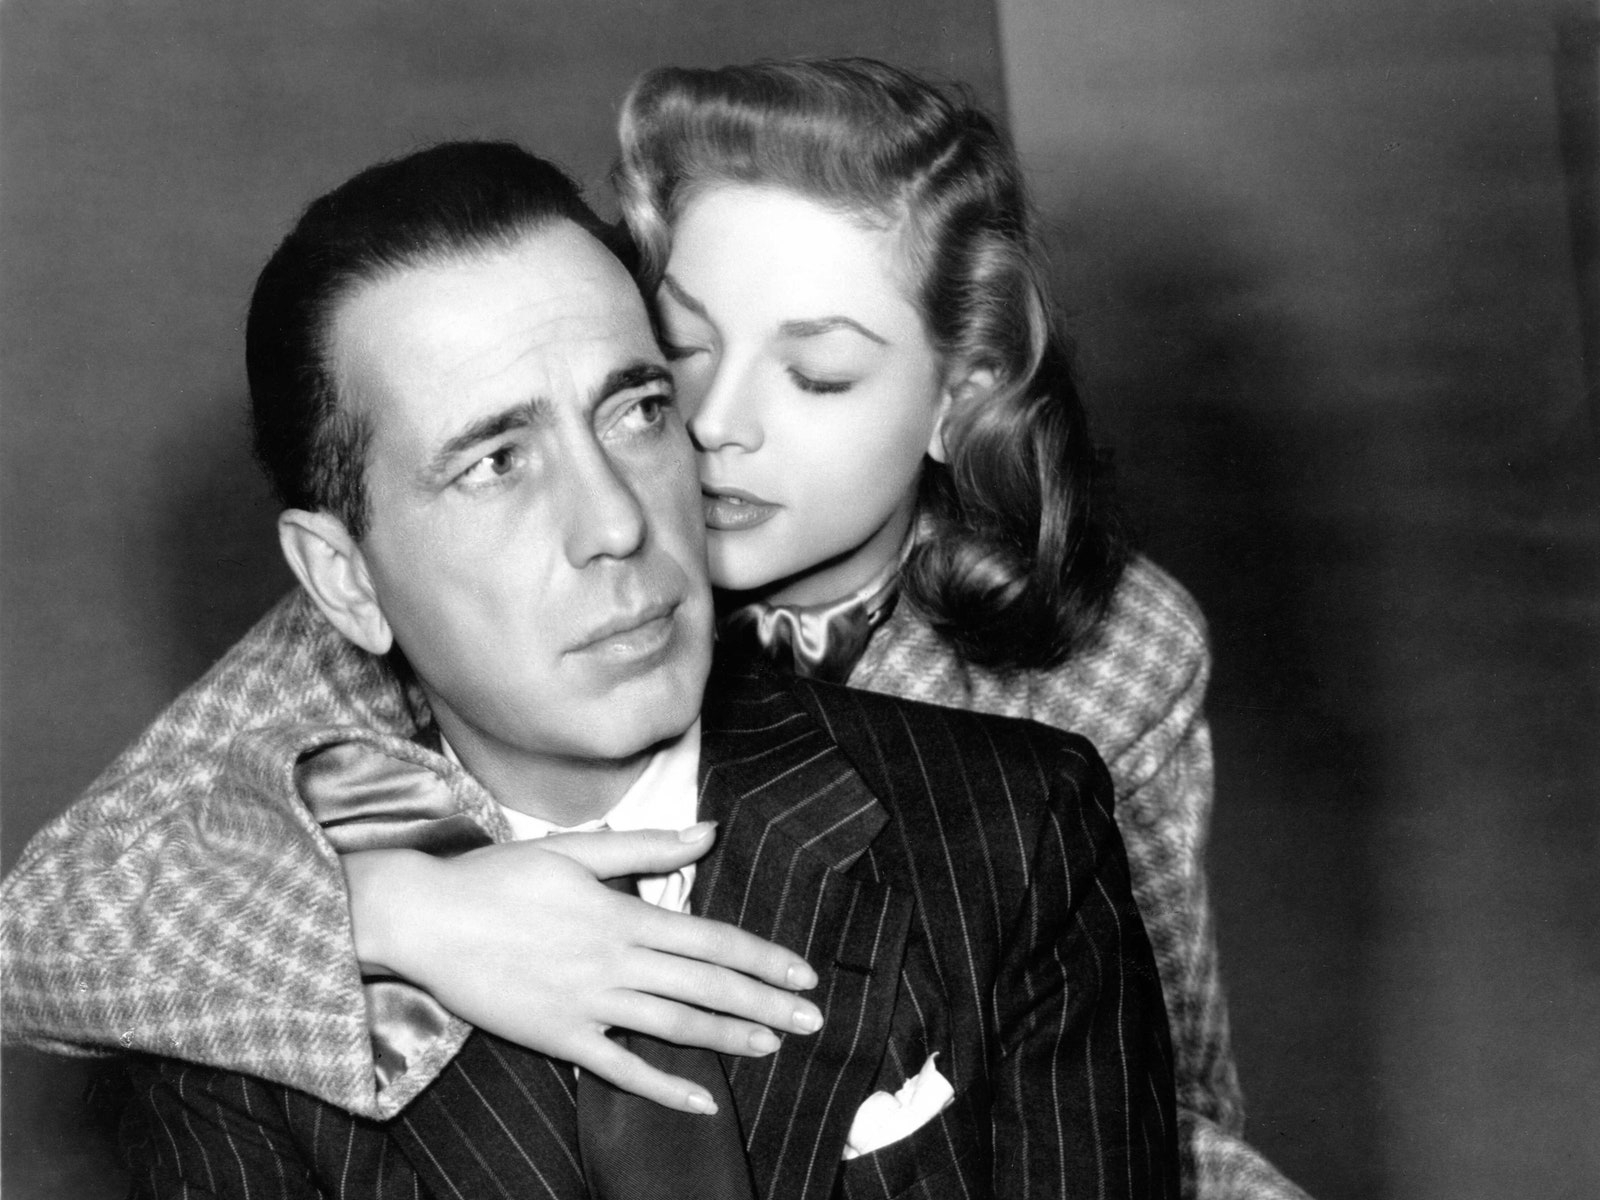 极速赛车开奖官网开奖官方网站 168极速赛车开奖结果查询 官网开奖记录 全国最快开奖官网平台. The Untold Stories of Humphrey Bogart’s Volatile Private Life